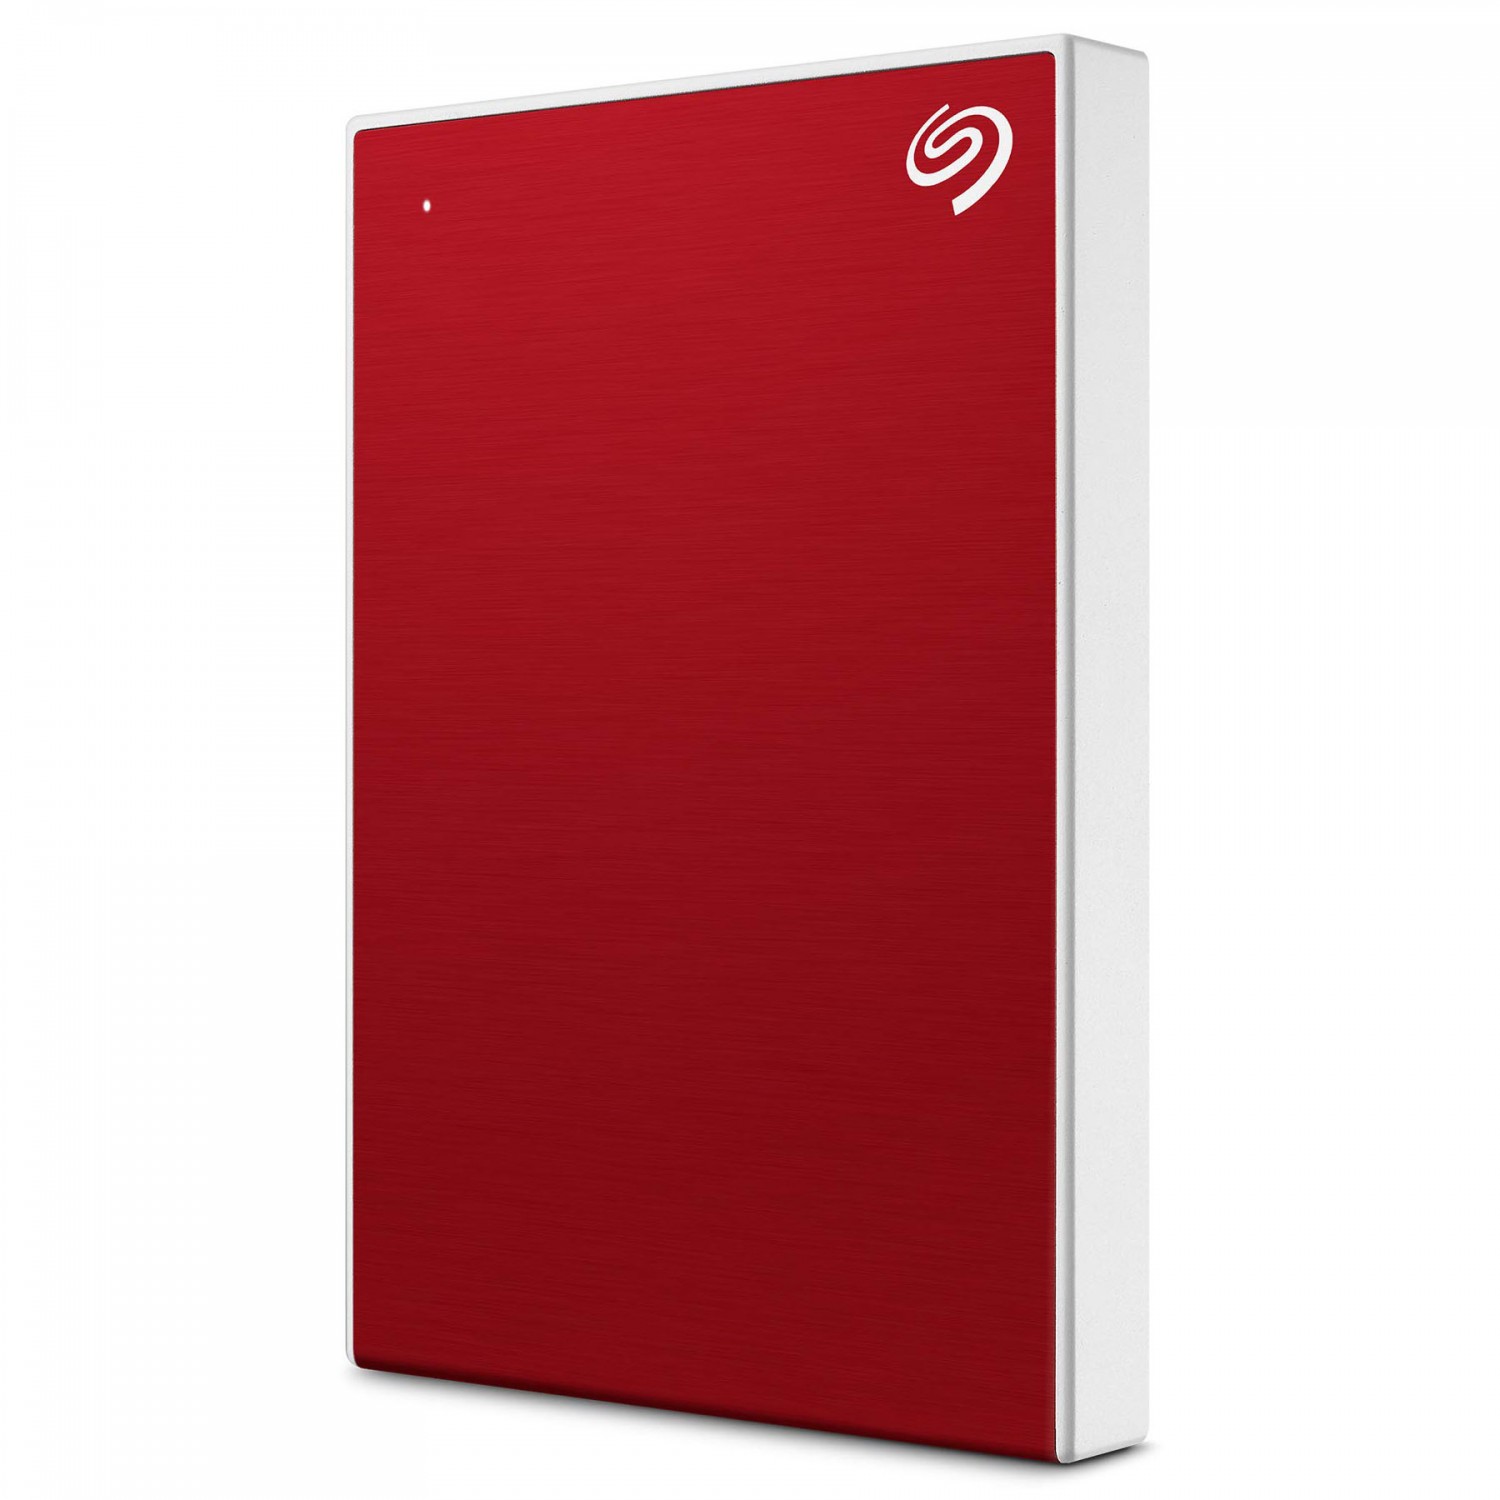 هارد دیسک اکسترنال Seagate One Touch 2TB - Red